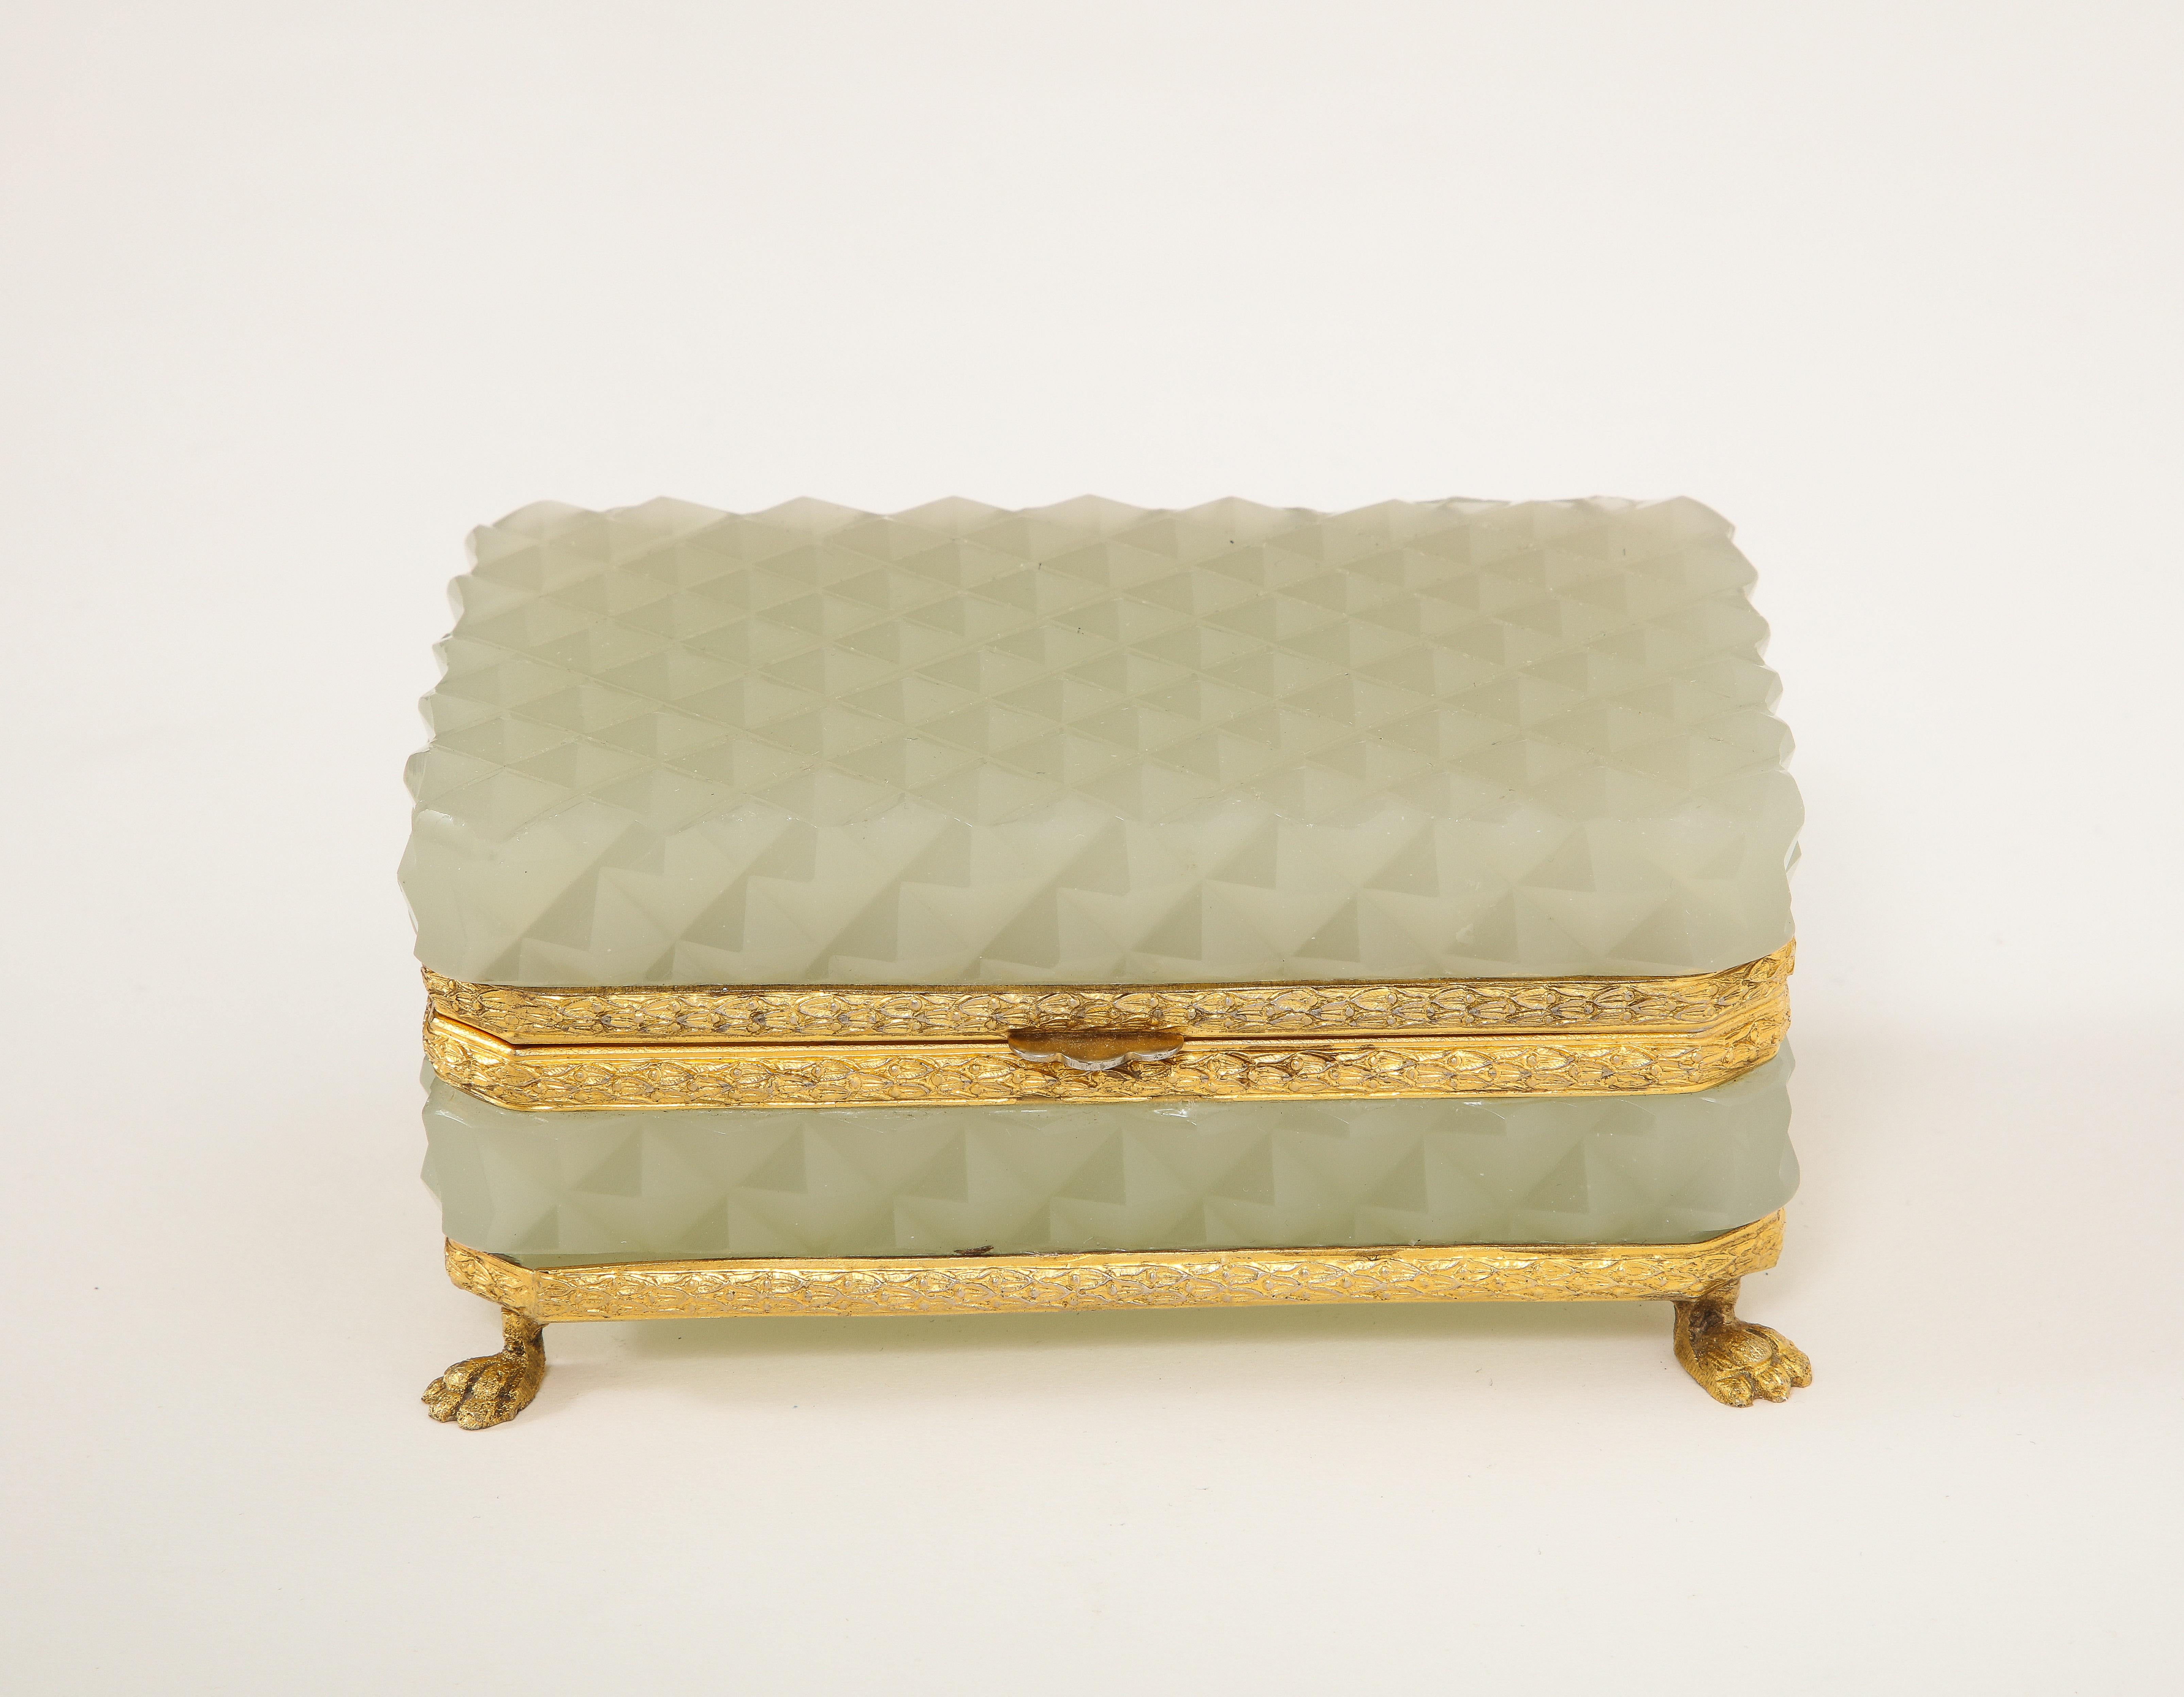 Boîte en cristal opalin crème montée sur pied et ornementée de bronze doré, de style Louis XVI, du XIXe siècle.  Le coffret est composé de deux sections de cristal opalin crème à motif prismatique français, montées sur un fabuleux loquet en bronze